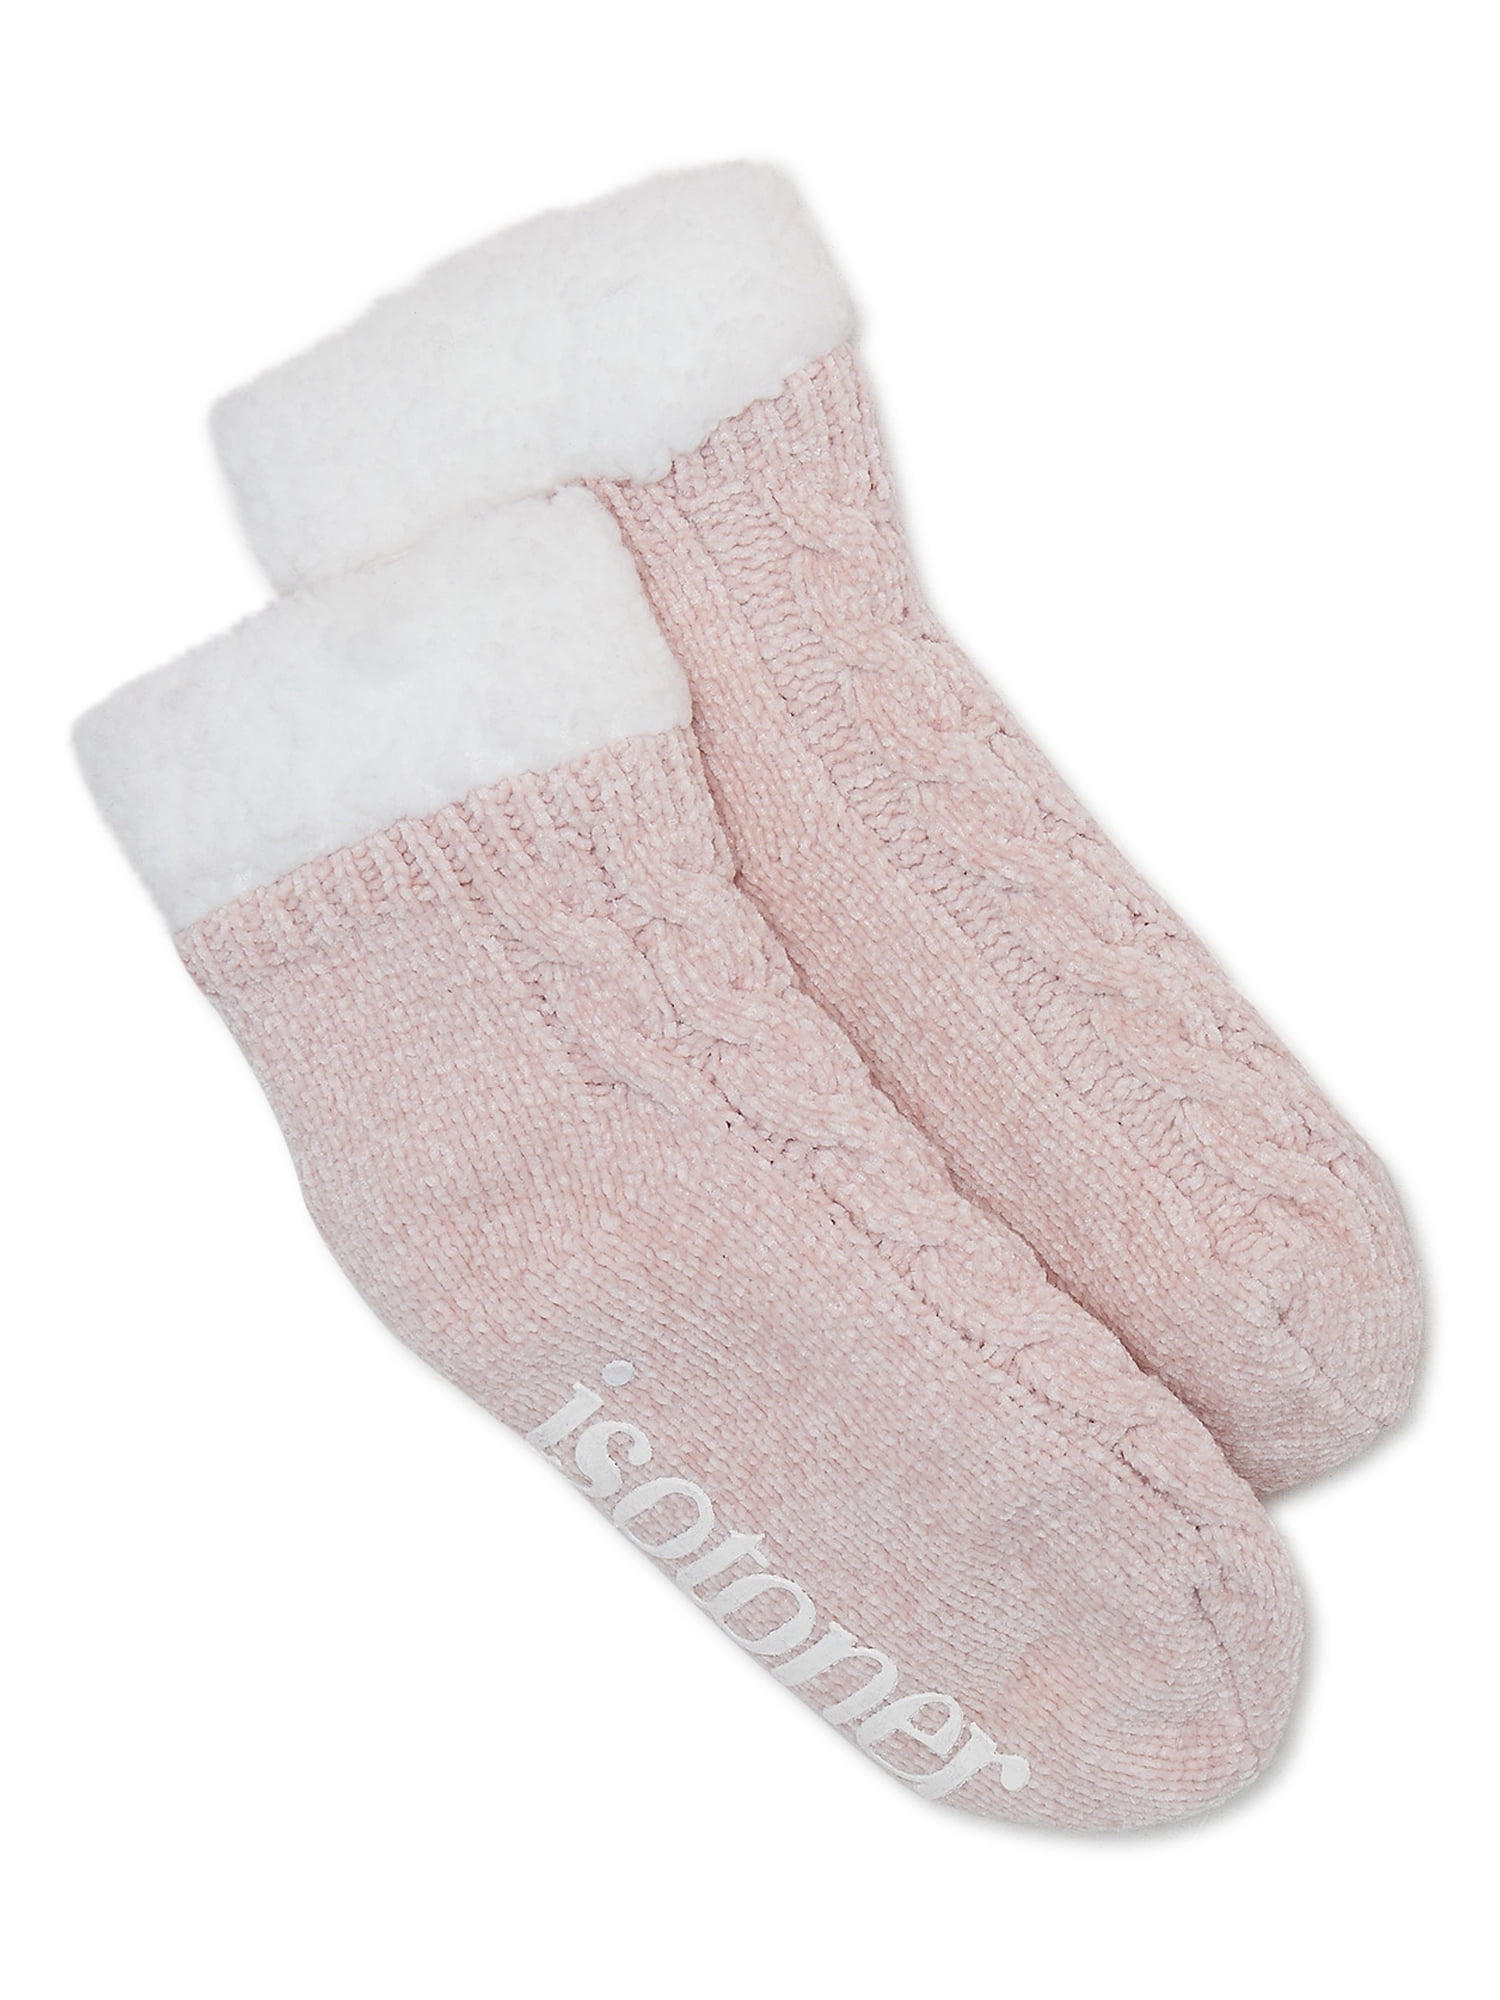 Isotoner Women s Chenille Slipper Socks One Size 111c3d34 6d3a 44cc 9313 828b37629890.de4e925beb31cdb2b6af206346a7f88c